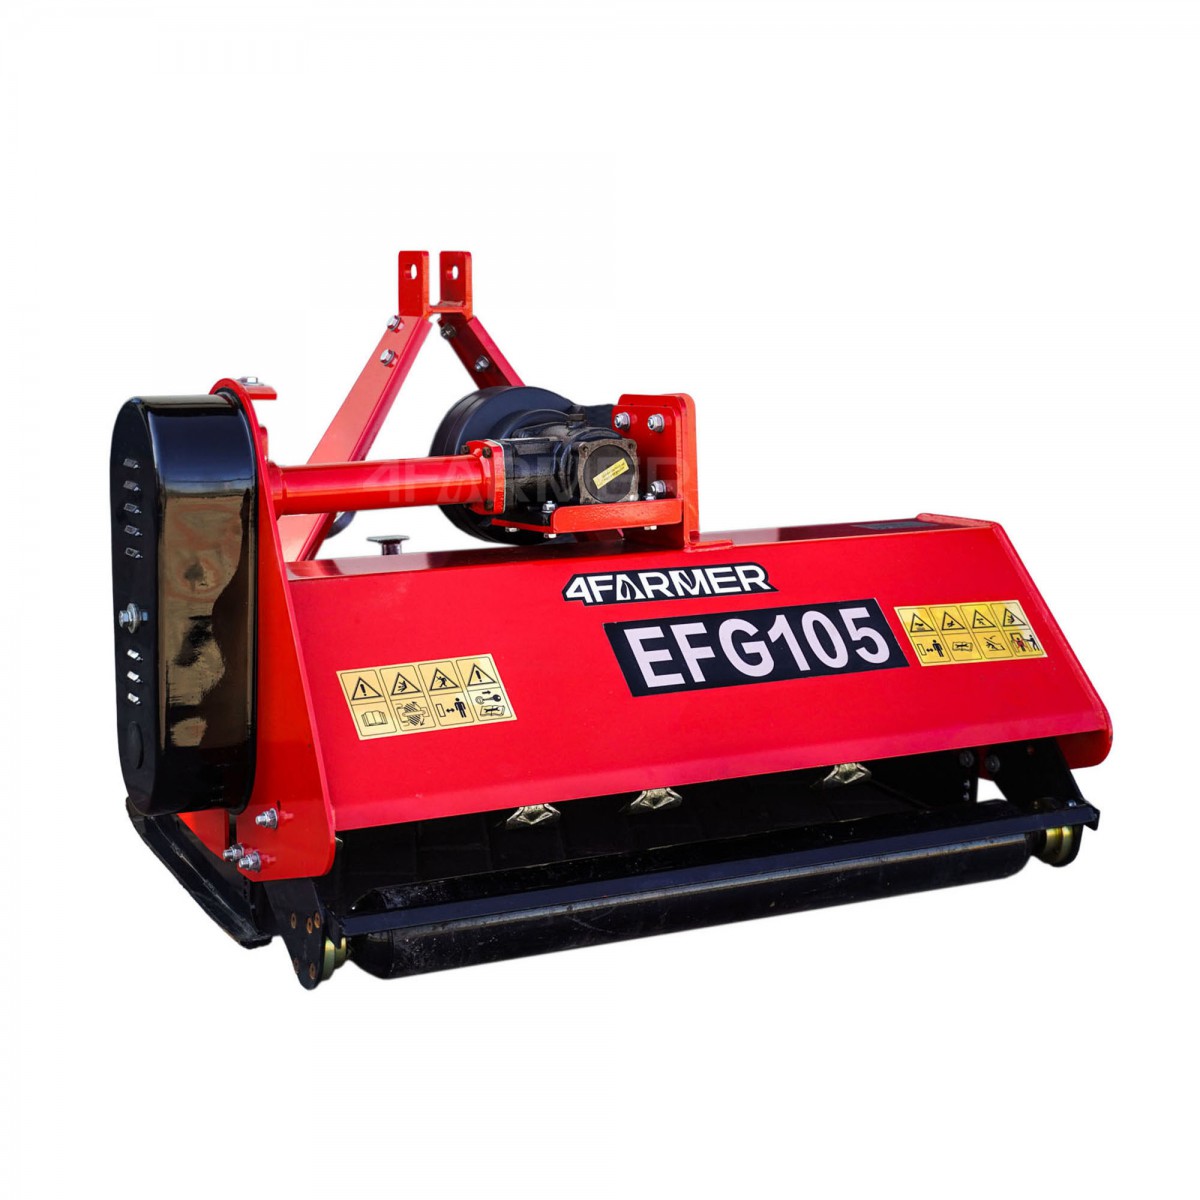 Trituradora de martillos EFG 105 4FARMER - roja